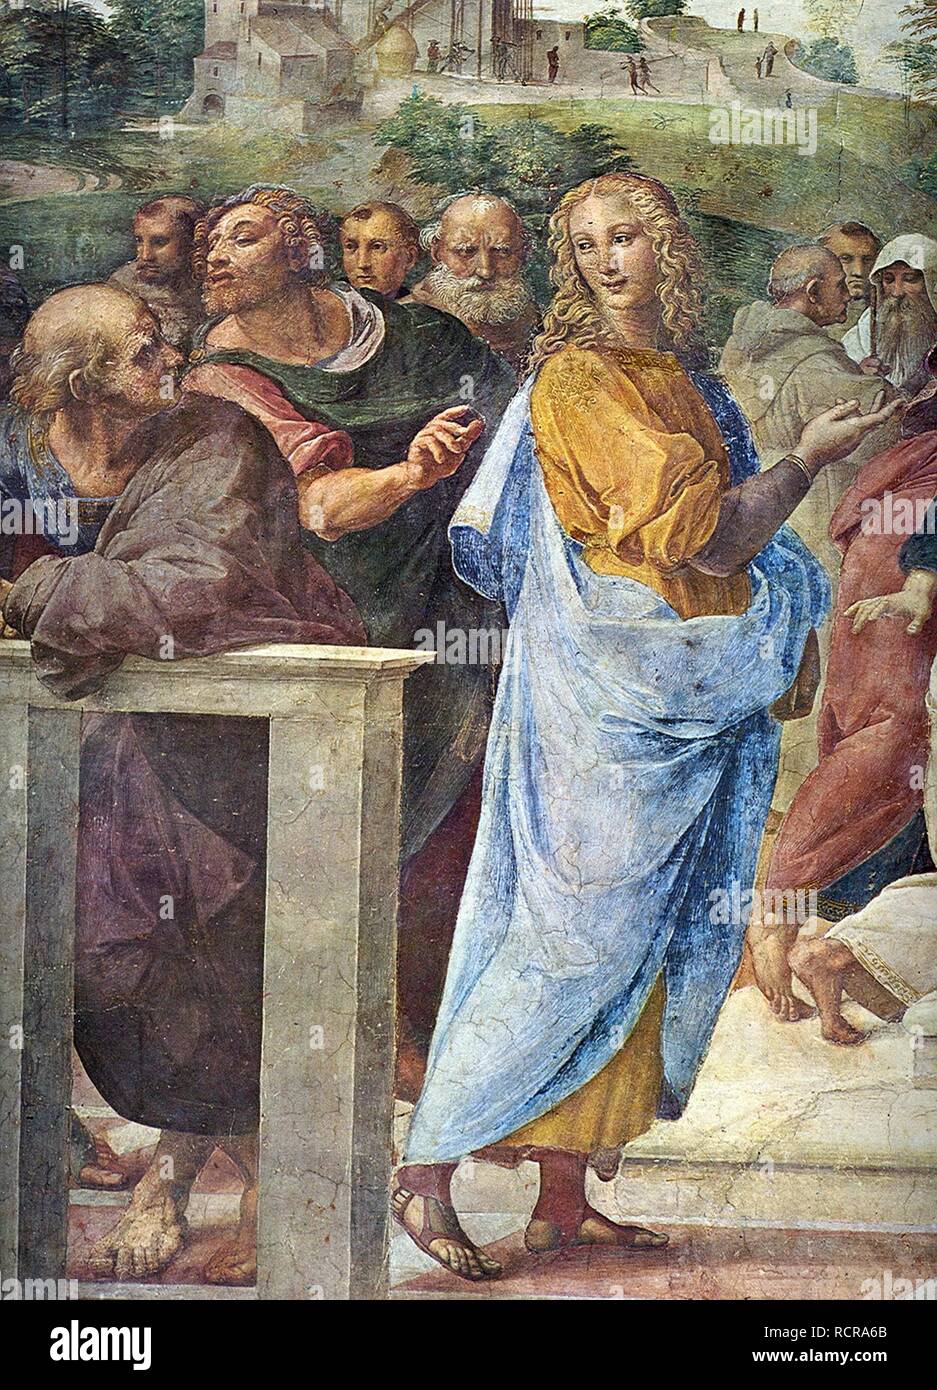 Disputa. Detail: Architect Bramante and Francesco Maria Della Rovere (right). Museum: Apostolic Palace, Vatican. Author: Raphael (Raffaello Sanzio da Urbino). Stock Photo